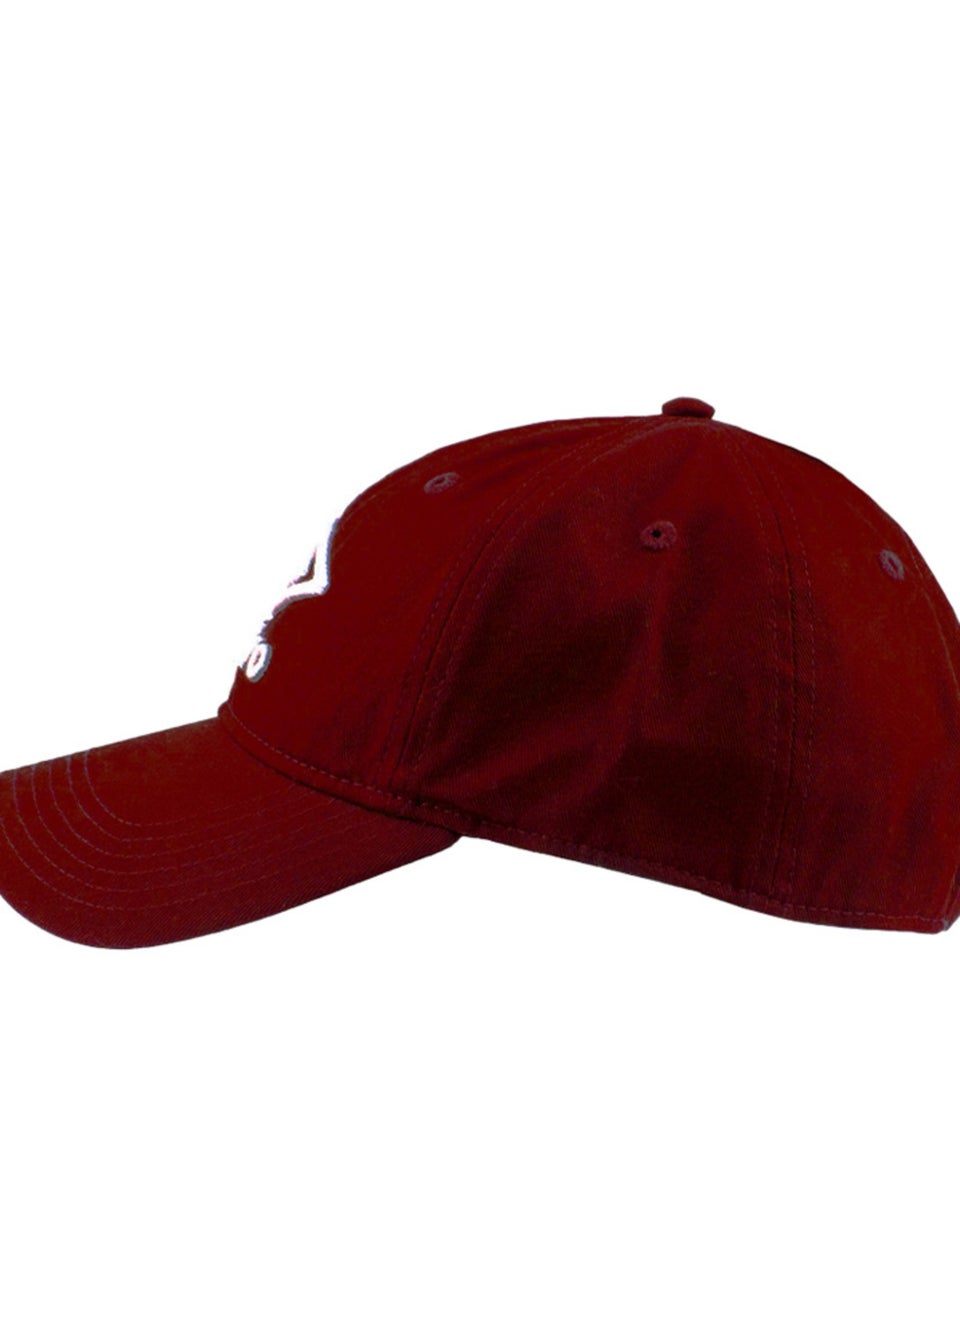 Umbro Red Logo Cap